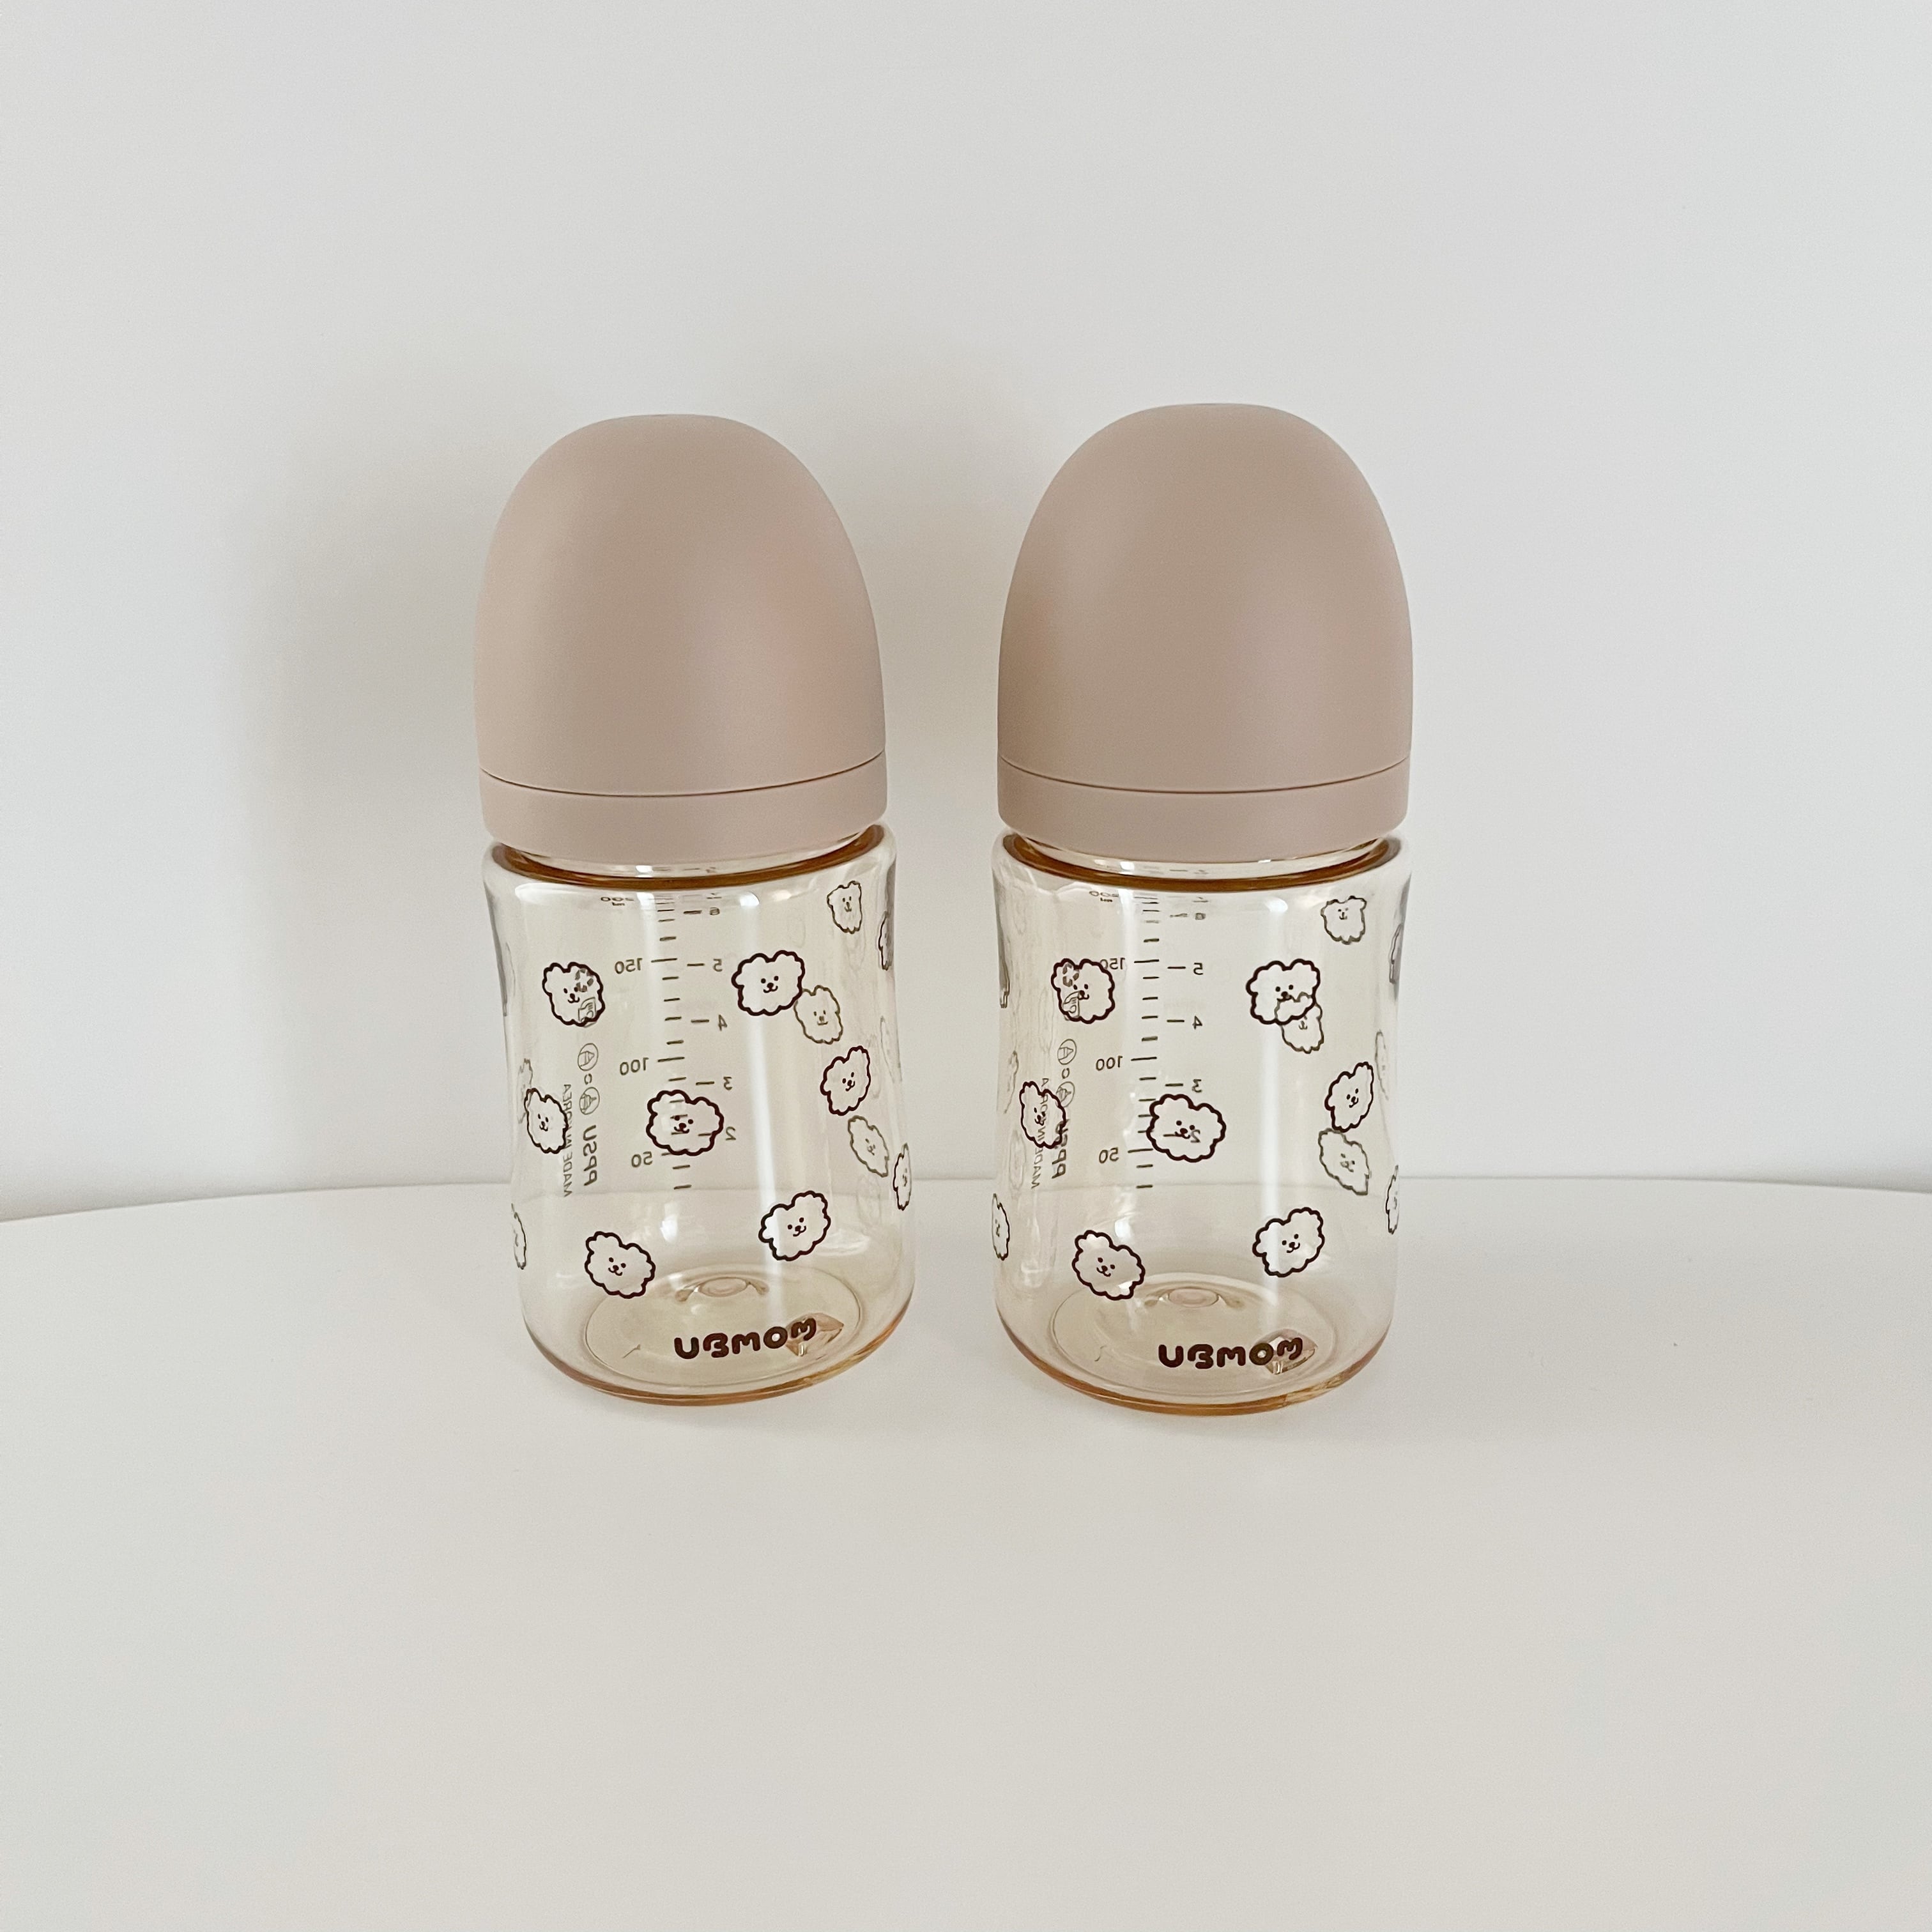 わんわん哺乳瓶2本セット(200ml) | イブル&Baby Fabric